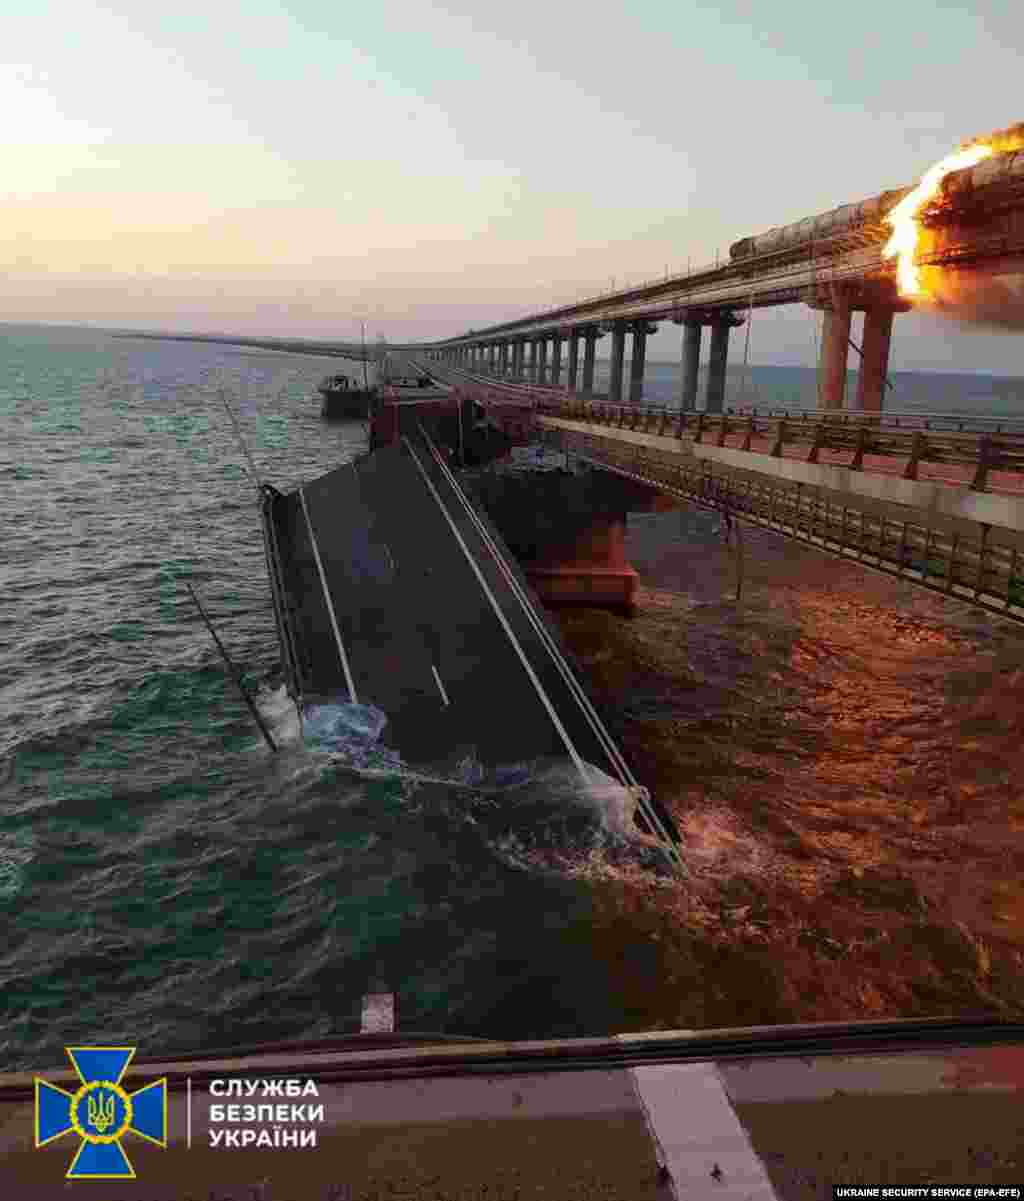 По сообщениям, автомобильный пролет Крымского моста разрушен. Поезда, следующие в Крым и из Крыма отменены